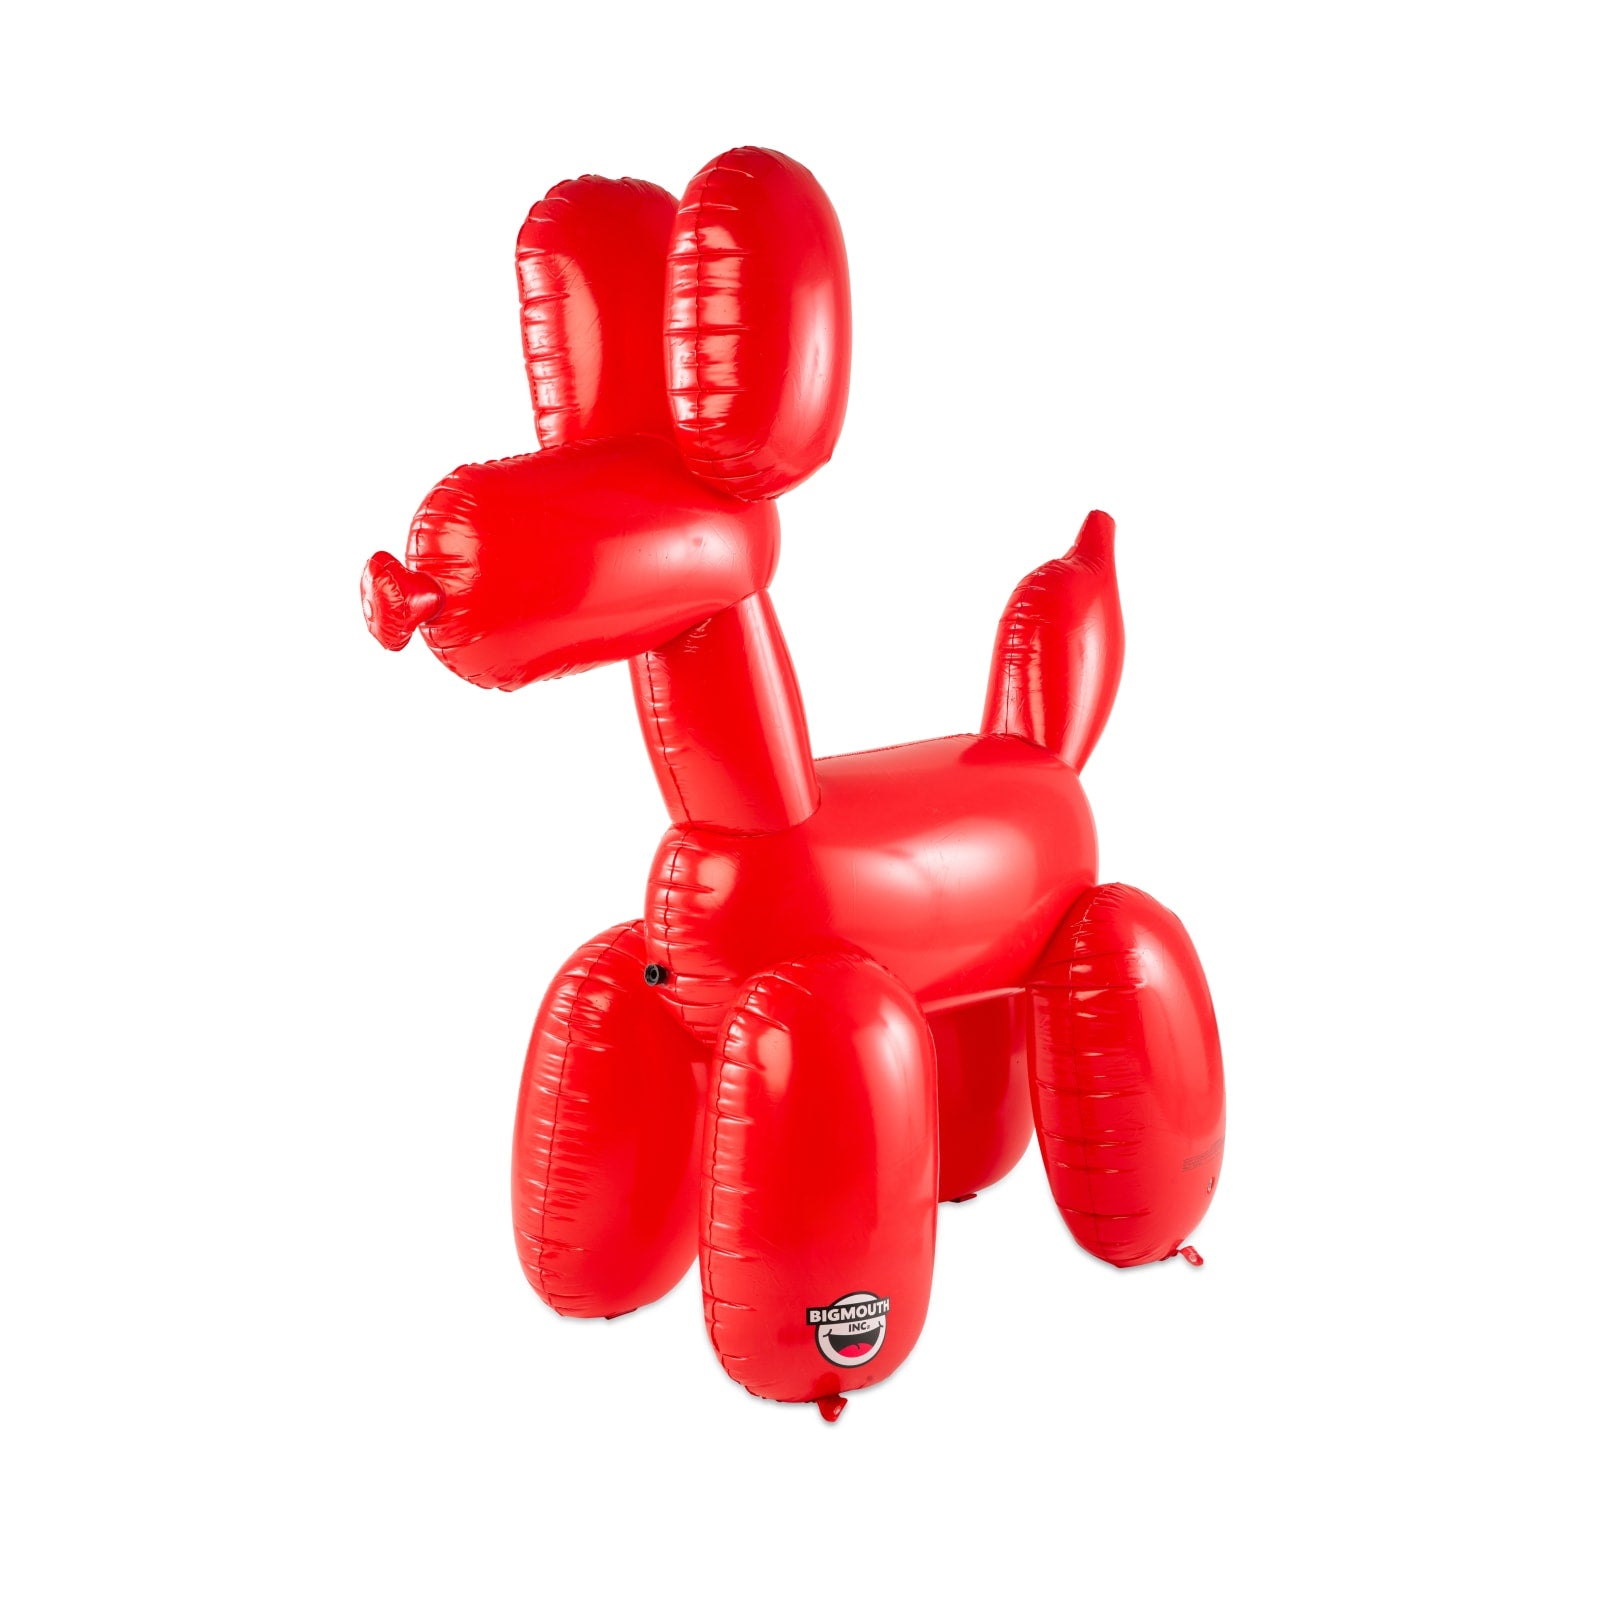 Balloon Dog Sprinkler